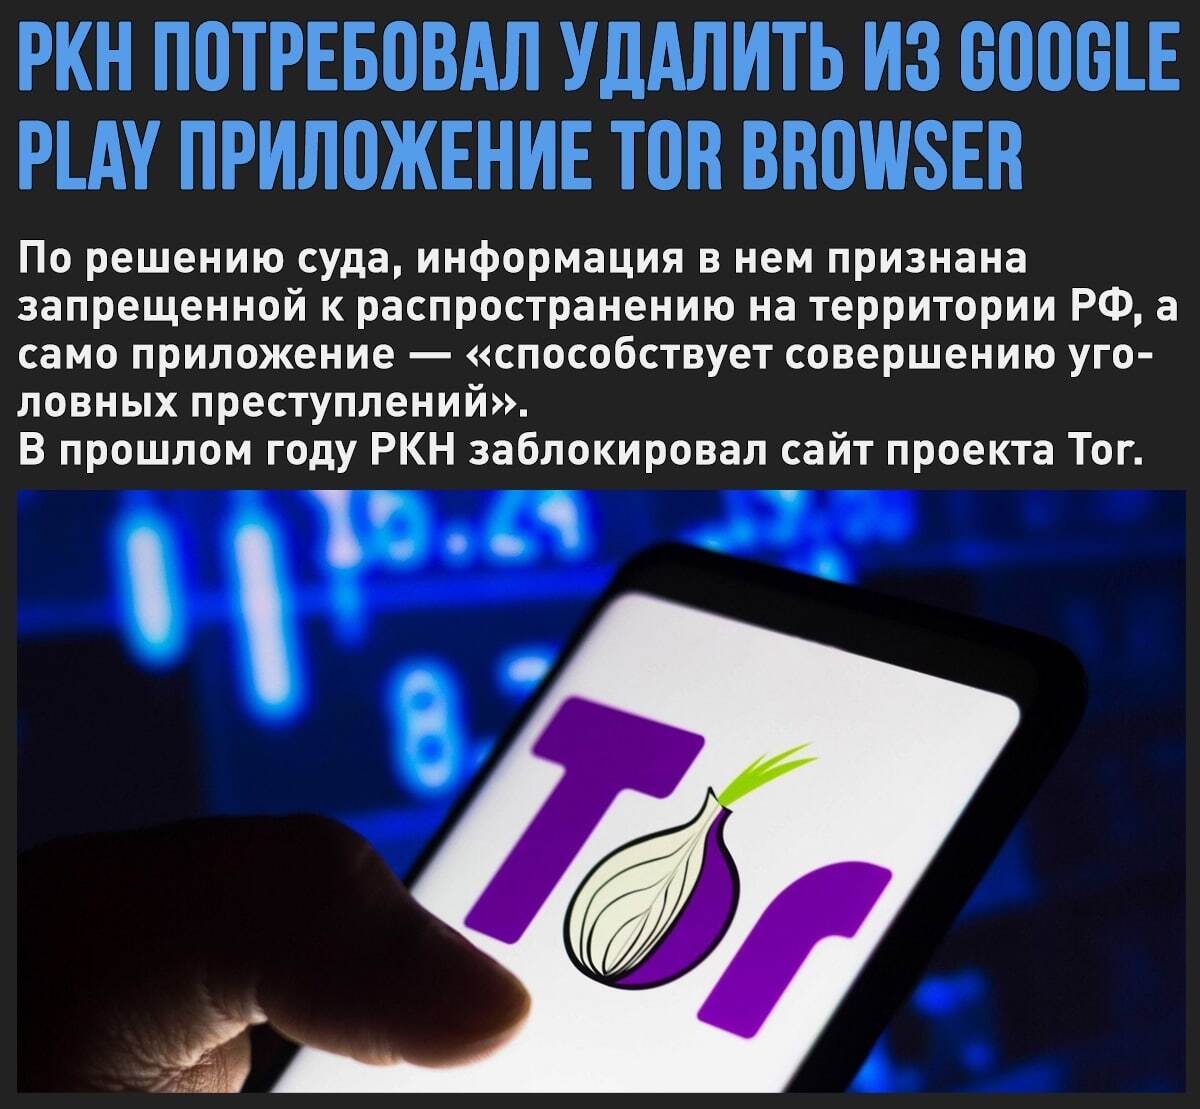 Tor browser детское порно megaruzxpnew4af hacker forum darknet